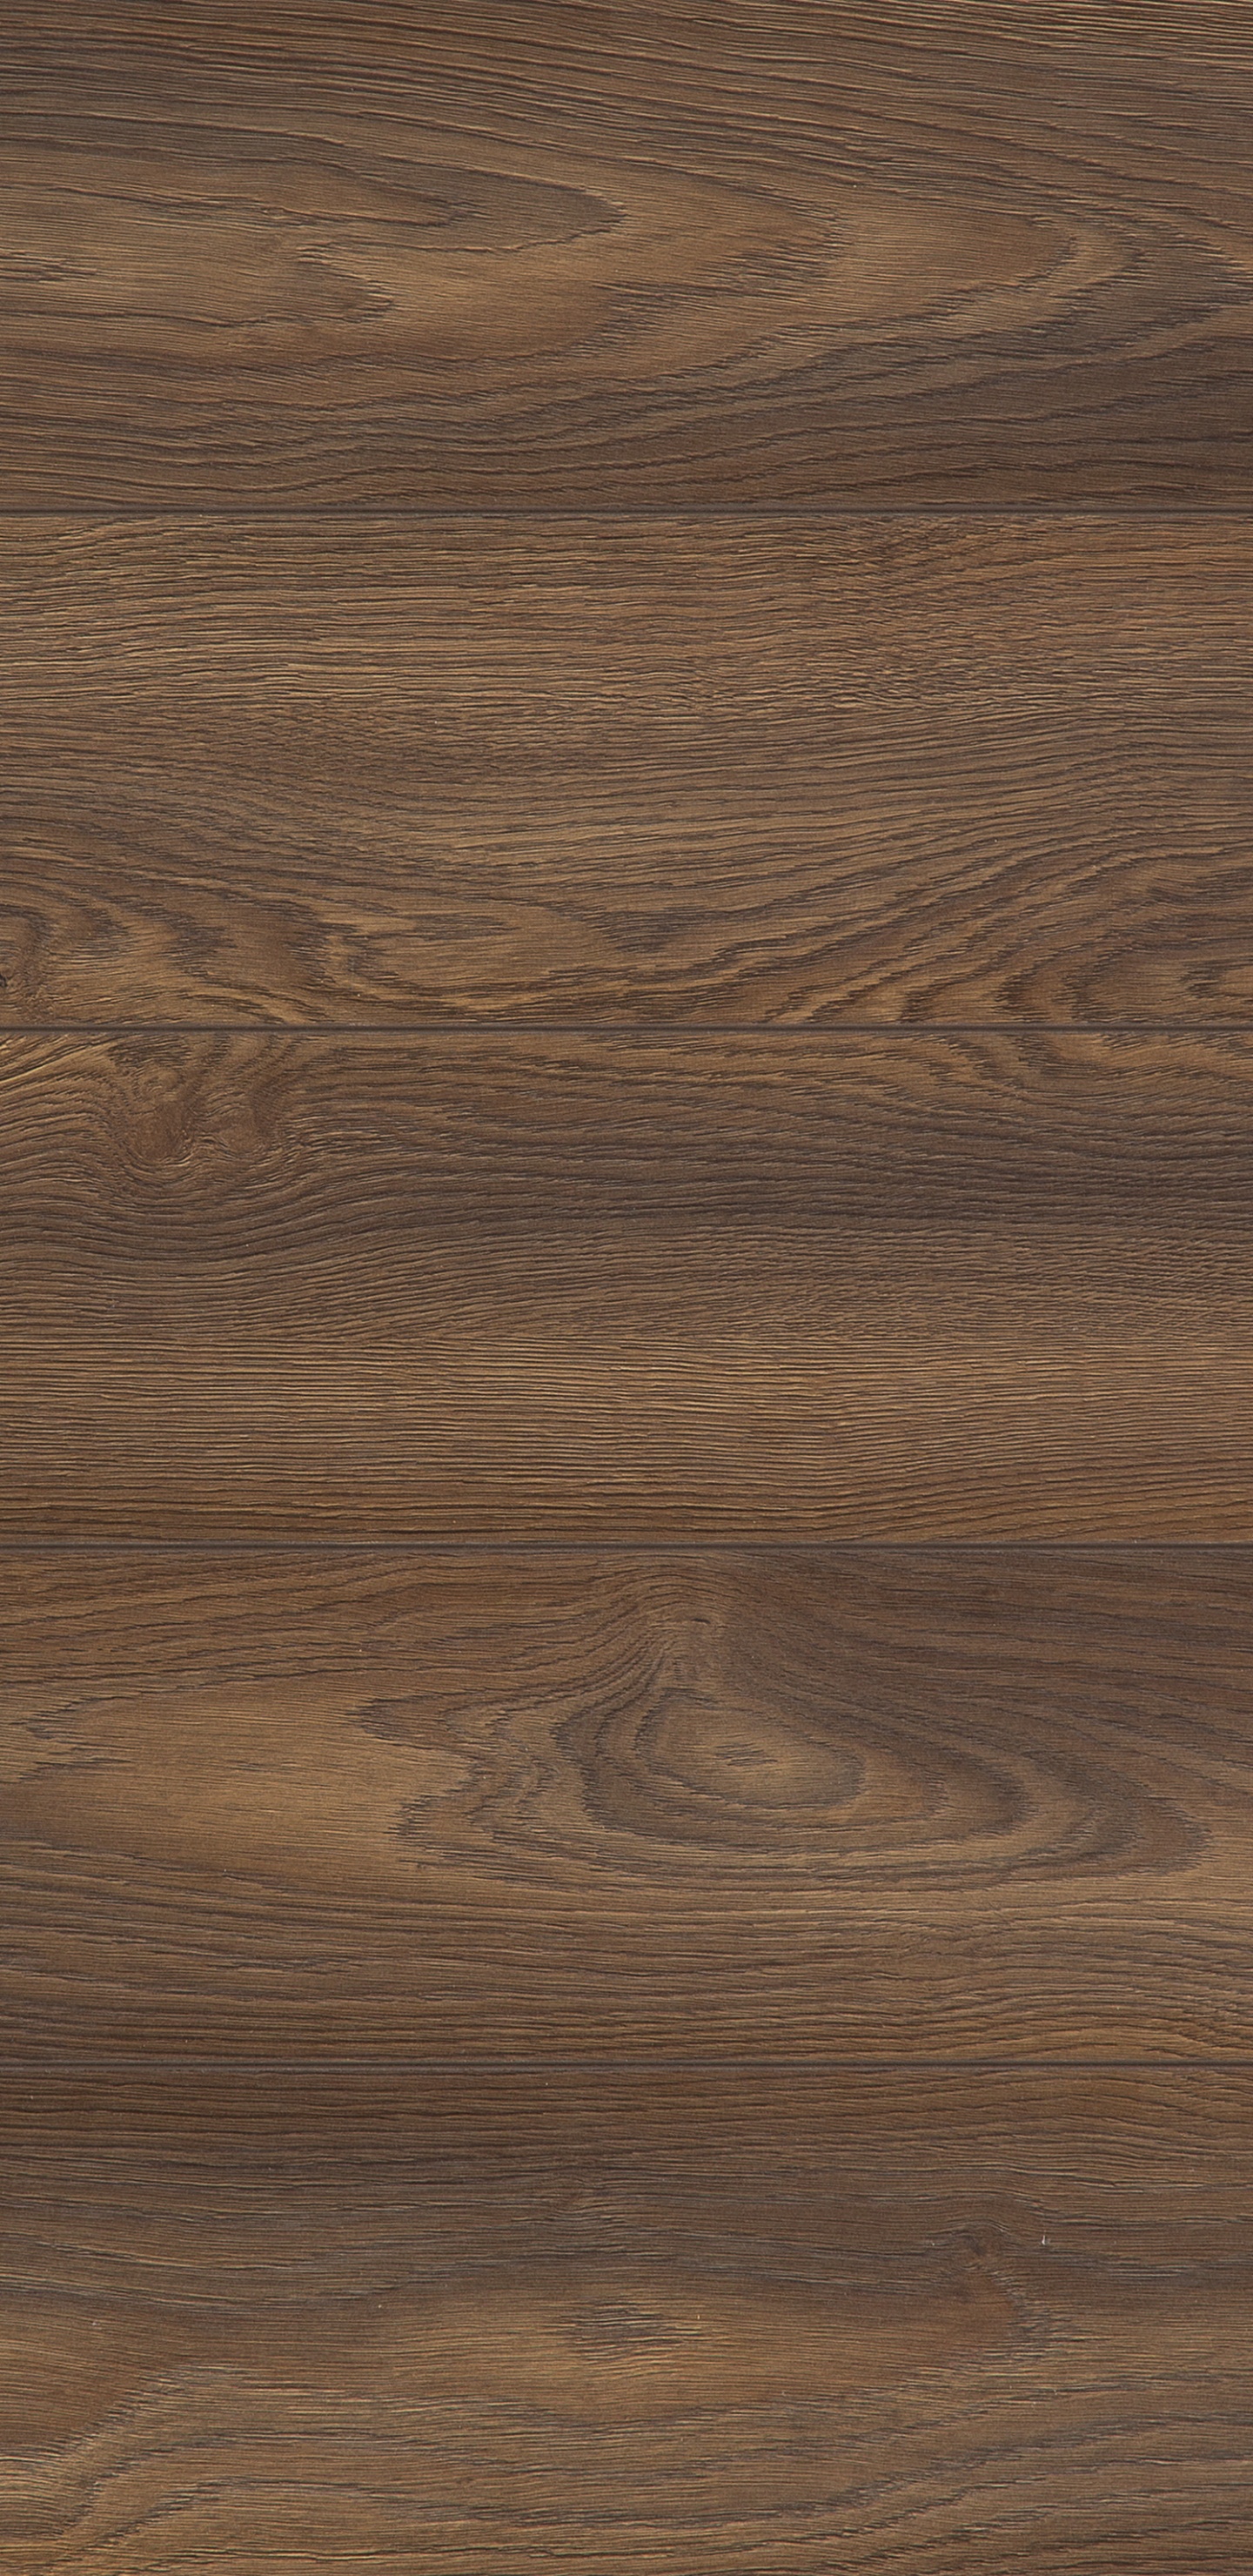 Brown Wooden Parquet Floor Tiles. Wallpaper in 1440x2960 Resolution